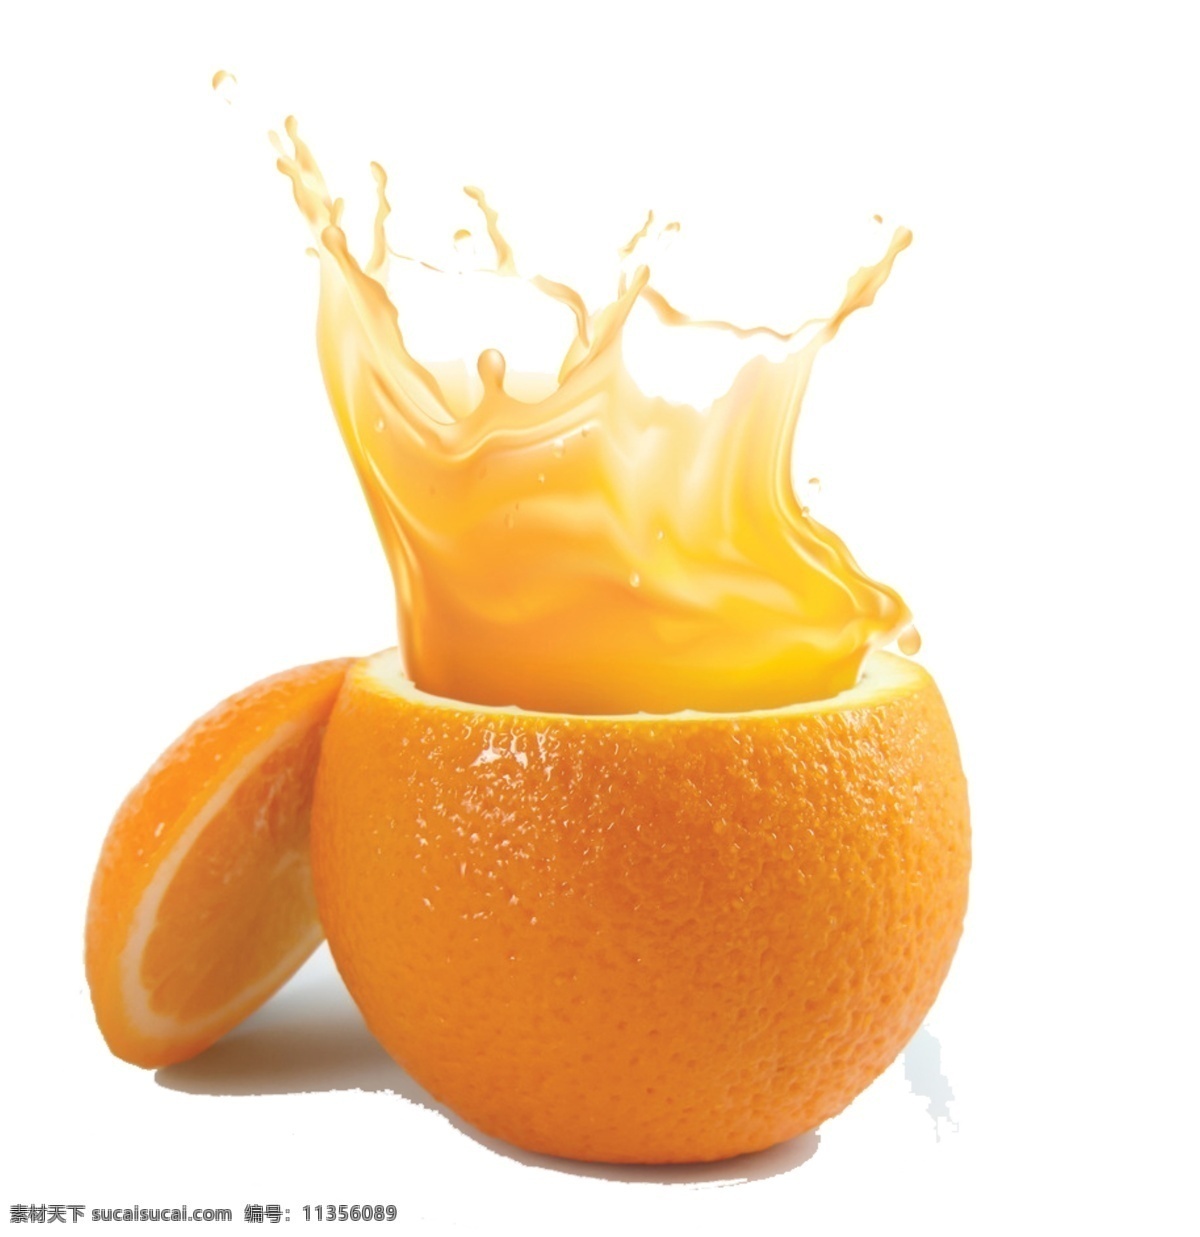 橙汁 橙子 橘子 橘子汁 金桔汁 金桔 柠檬 柠檬汁 新鲜水果 果汁 水果素材 北大青鸟 分层